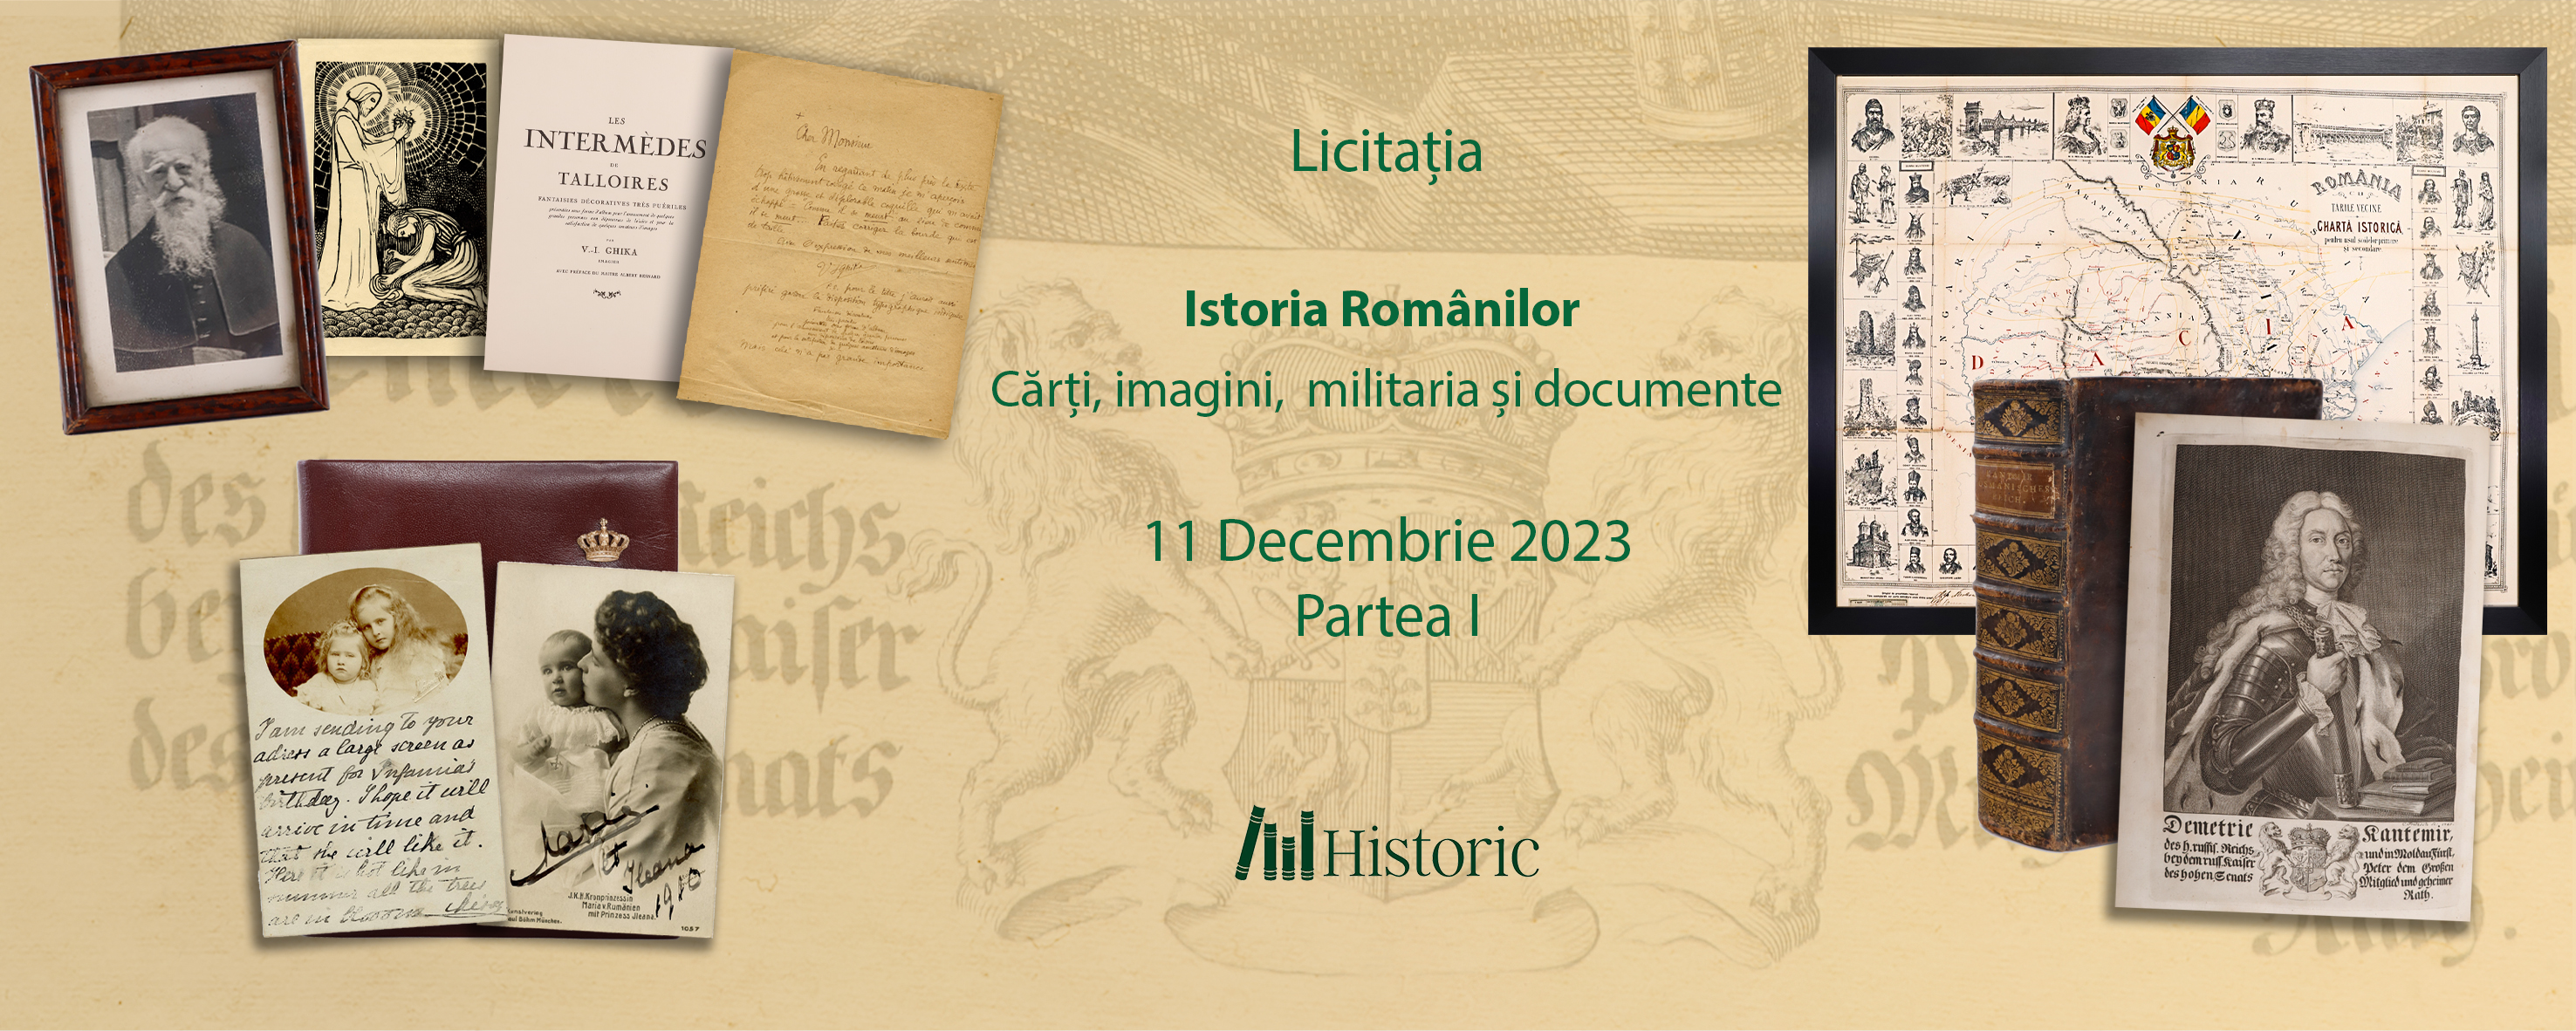 Licitația Istoria Românilor - Cărți, imagini, militaria - Partea 1